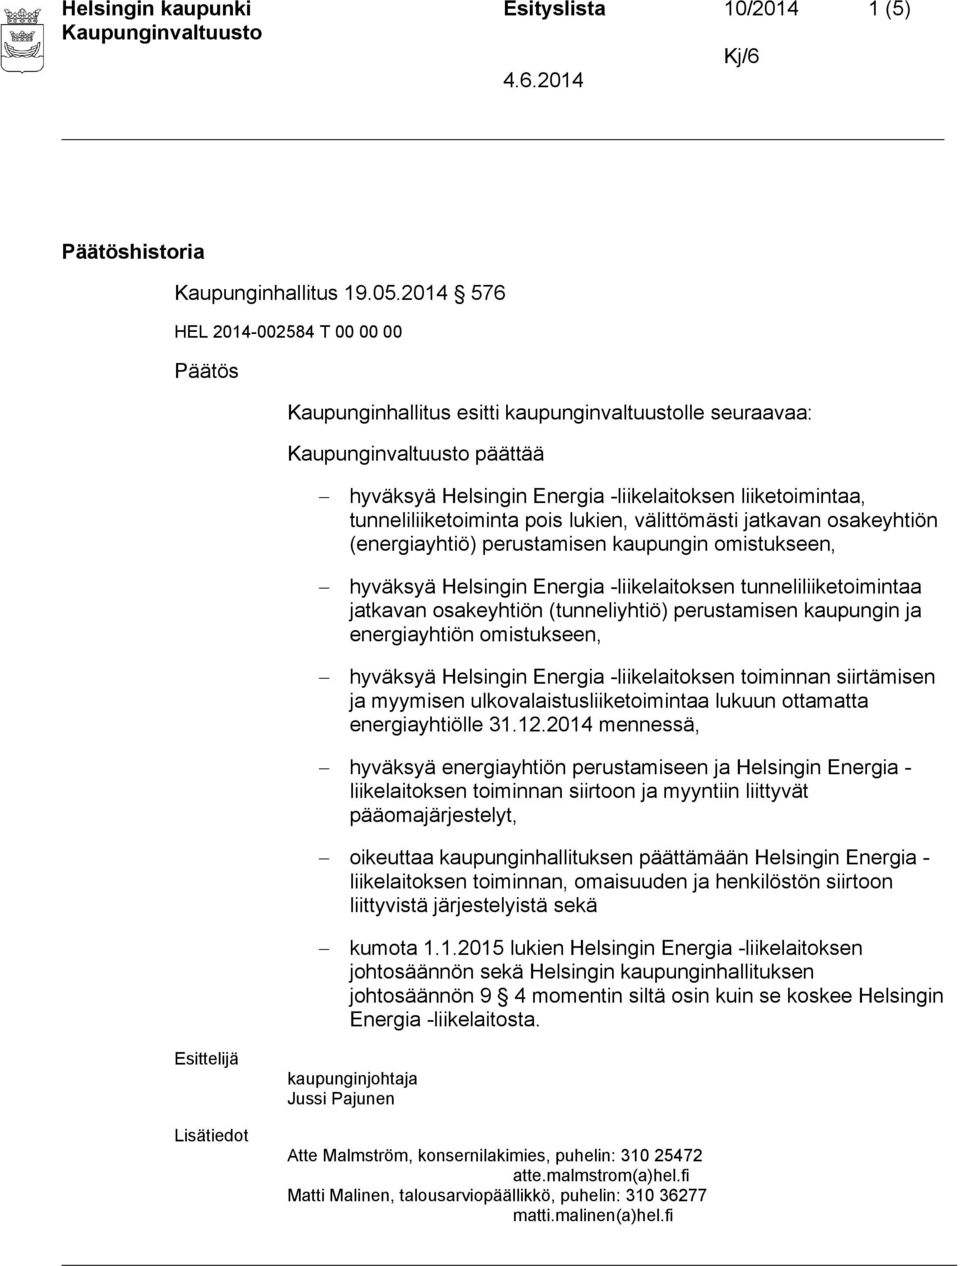 osakeyhtiön (energiayhtiö) perustamisen kaupungin omistukseen, hyväksyä Helsingin Energia -liikelaitoksen tunneliliiketoimintaa jatkavan osakeyhtiön (tunneliyhtiö) perustamisen kaupungin ja